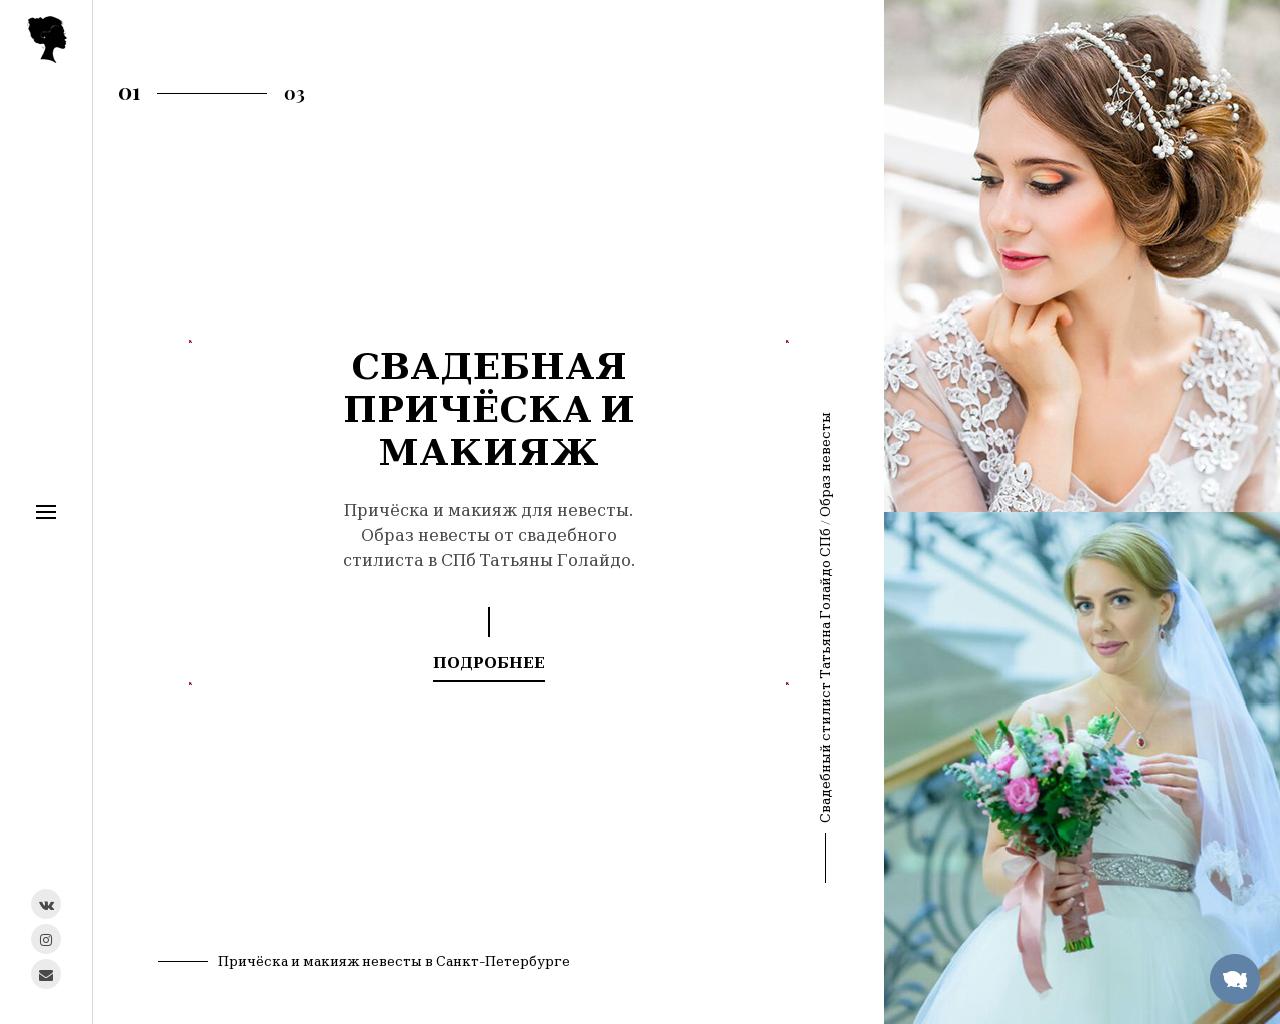 Изображение сайта wedding-stylist.ru в разрешении 1280x1024